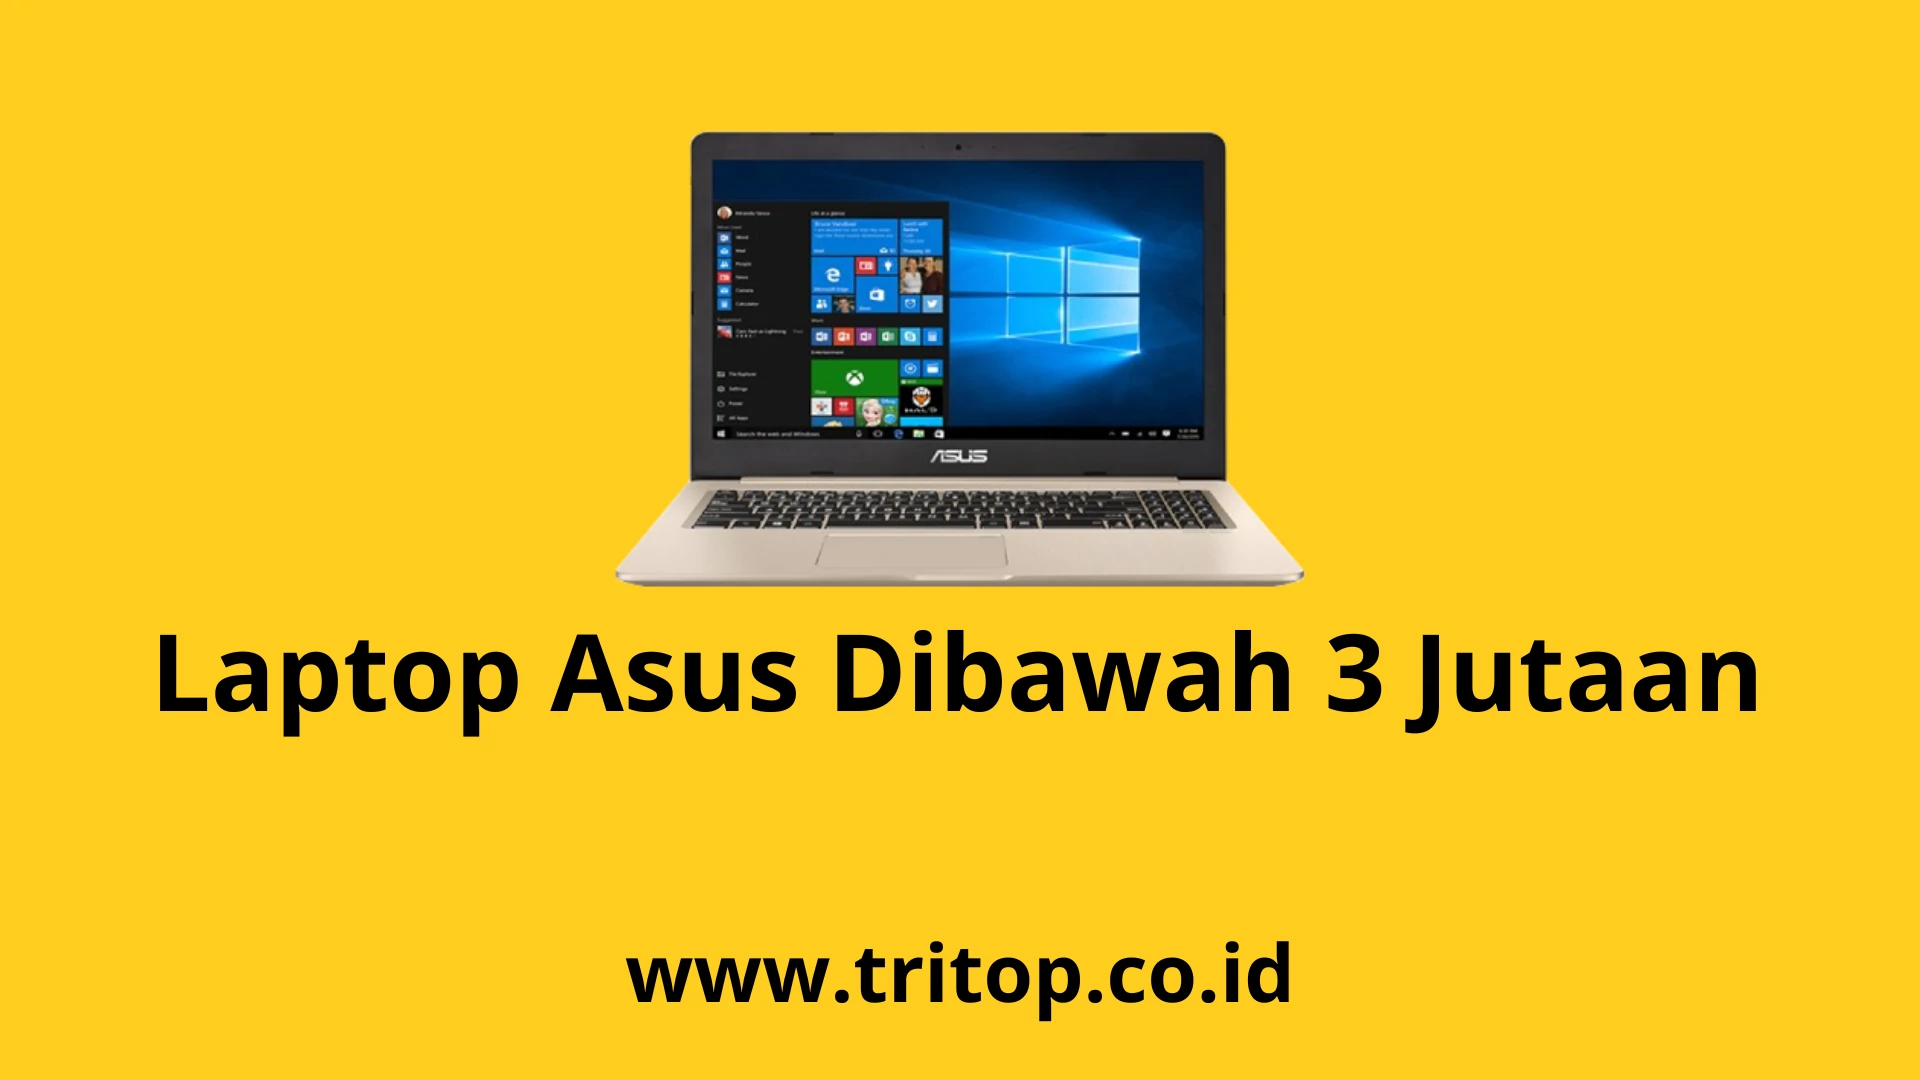 Laptop Asus Dibawah 3 Jutaan Tritop.co.id